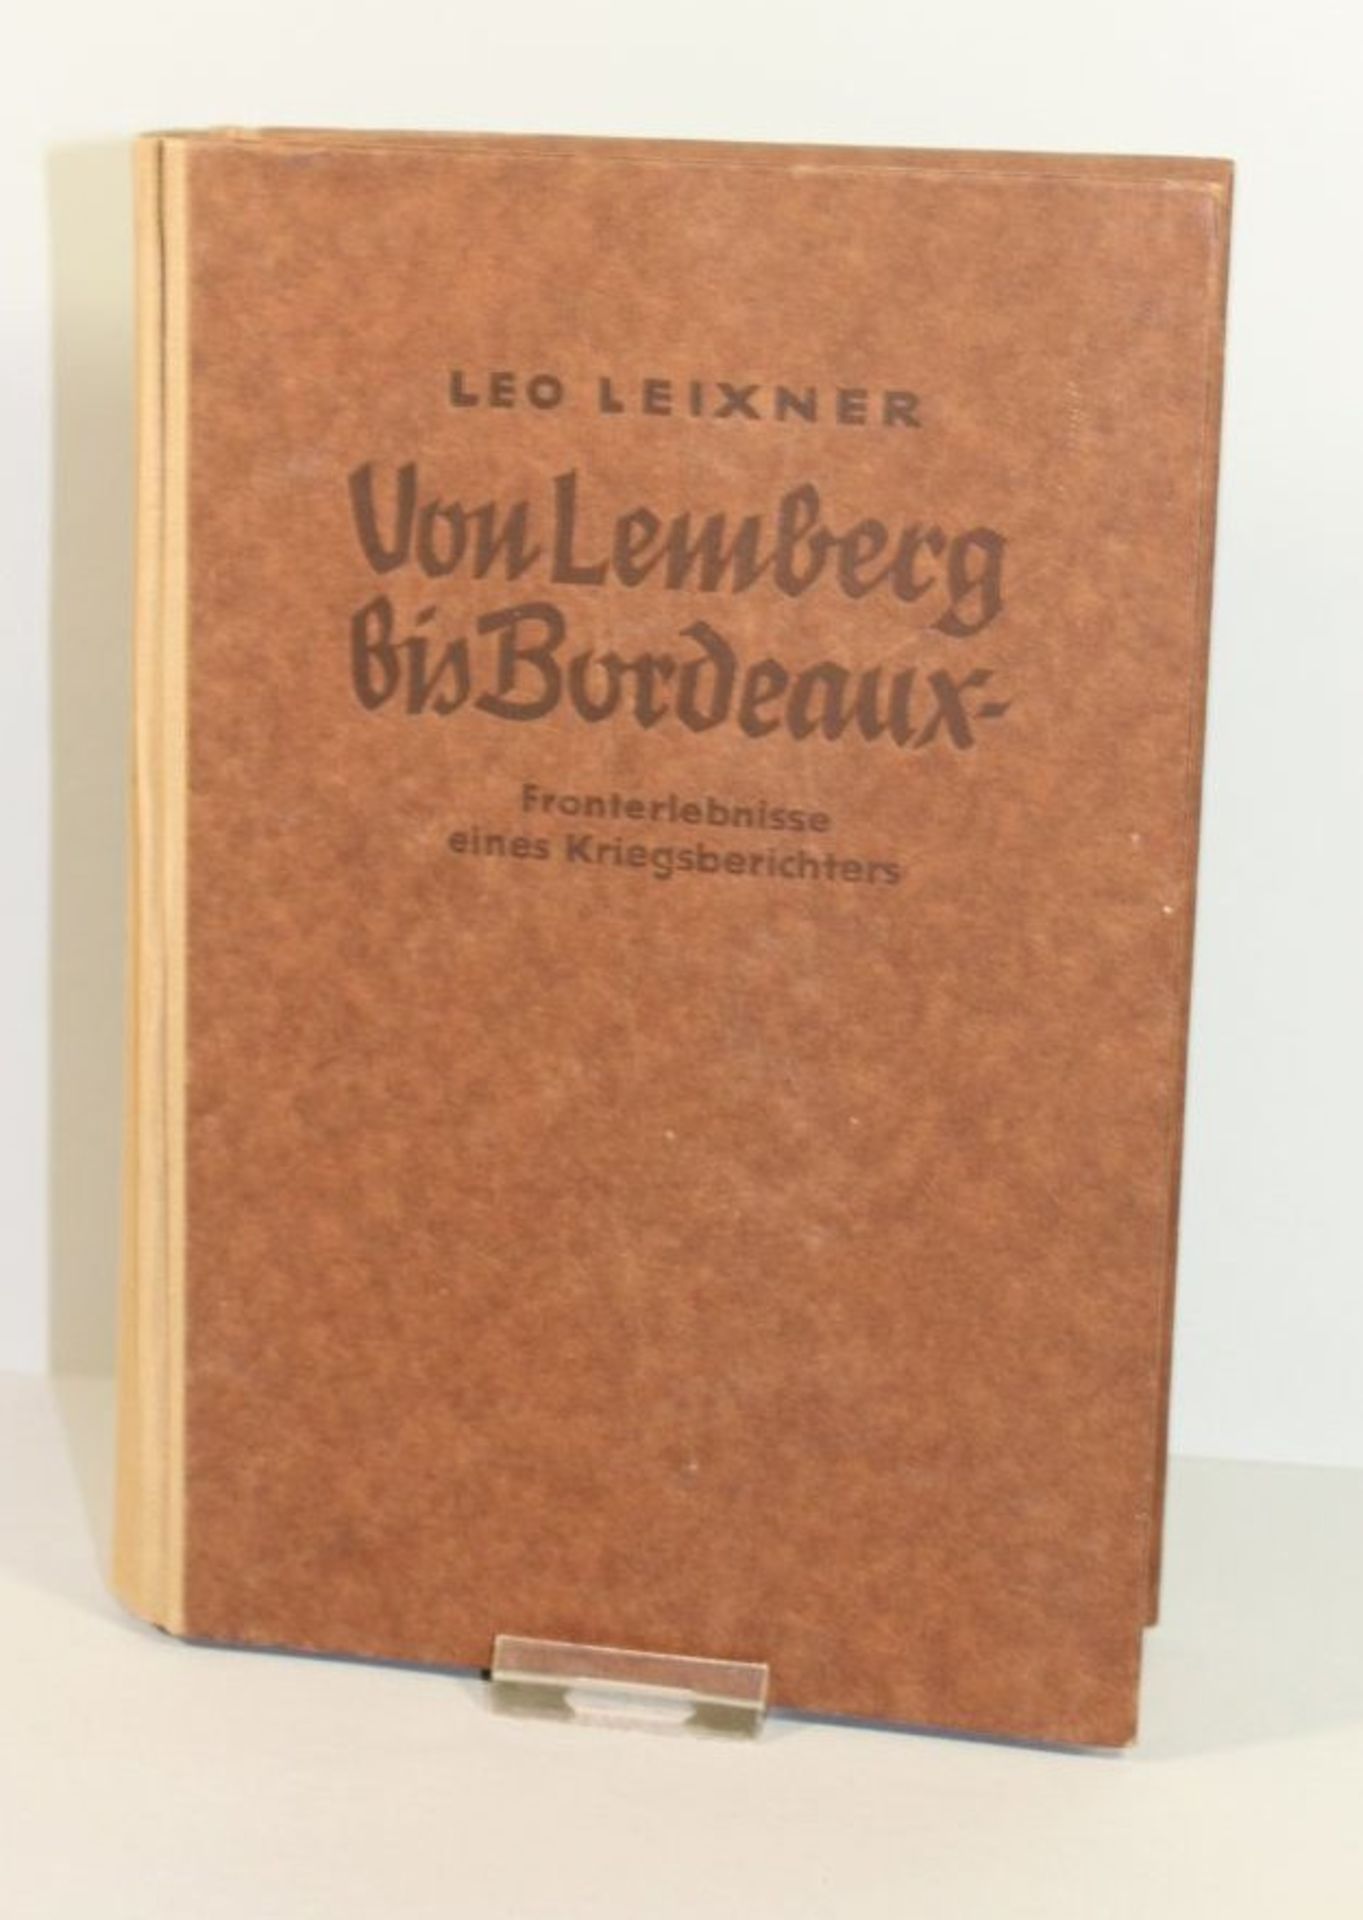 Von Lemberg bis Bordeaux - Fronterlebnisse eines Kriegsberichters, Leo Leixner, 1942.